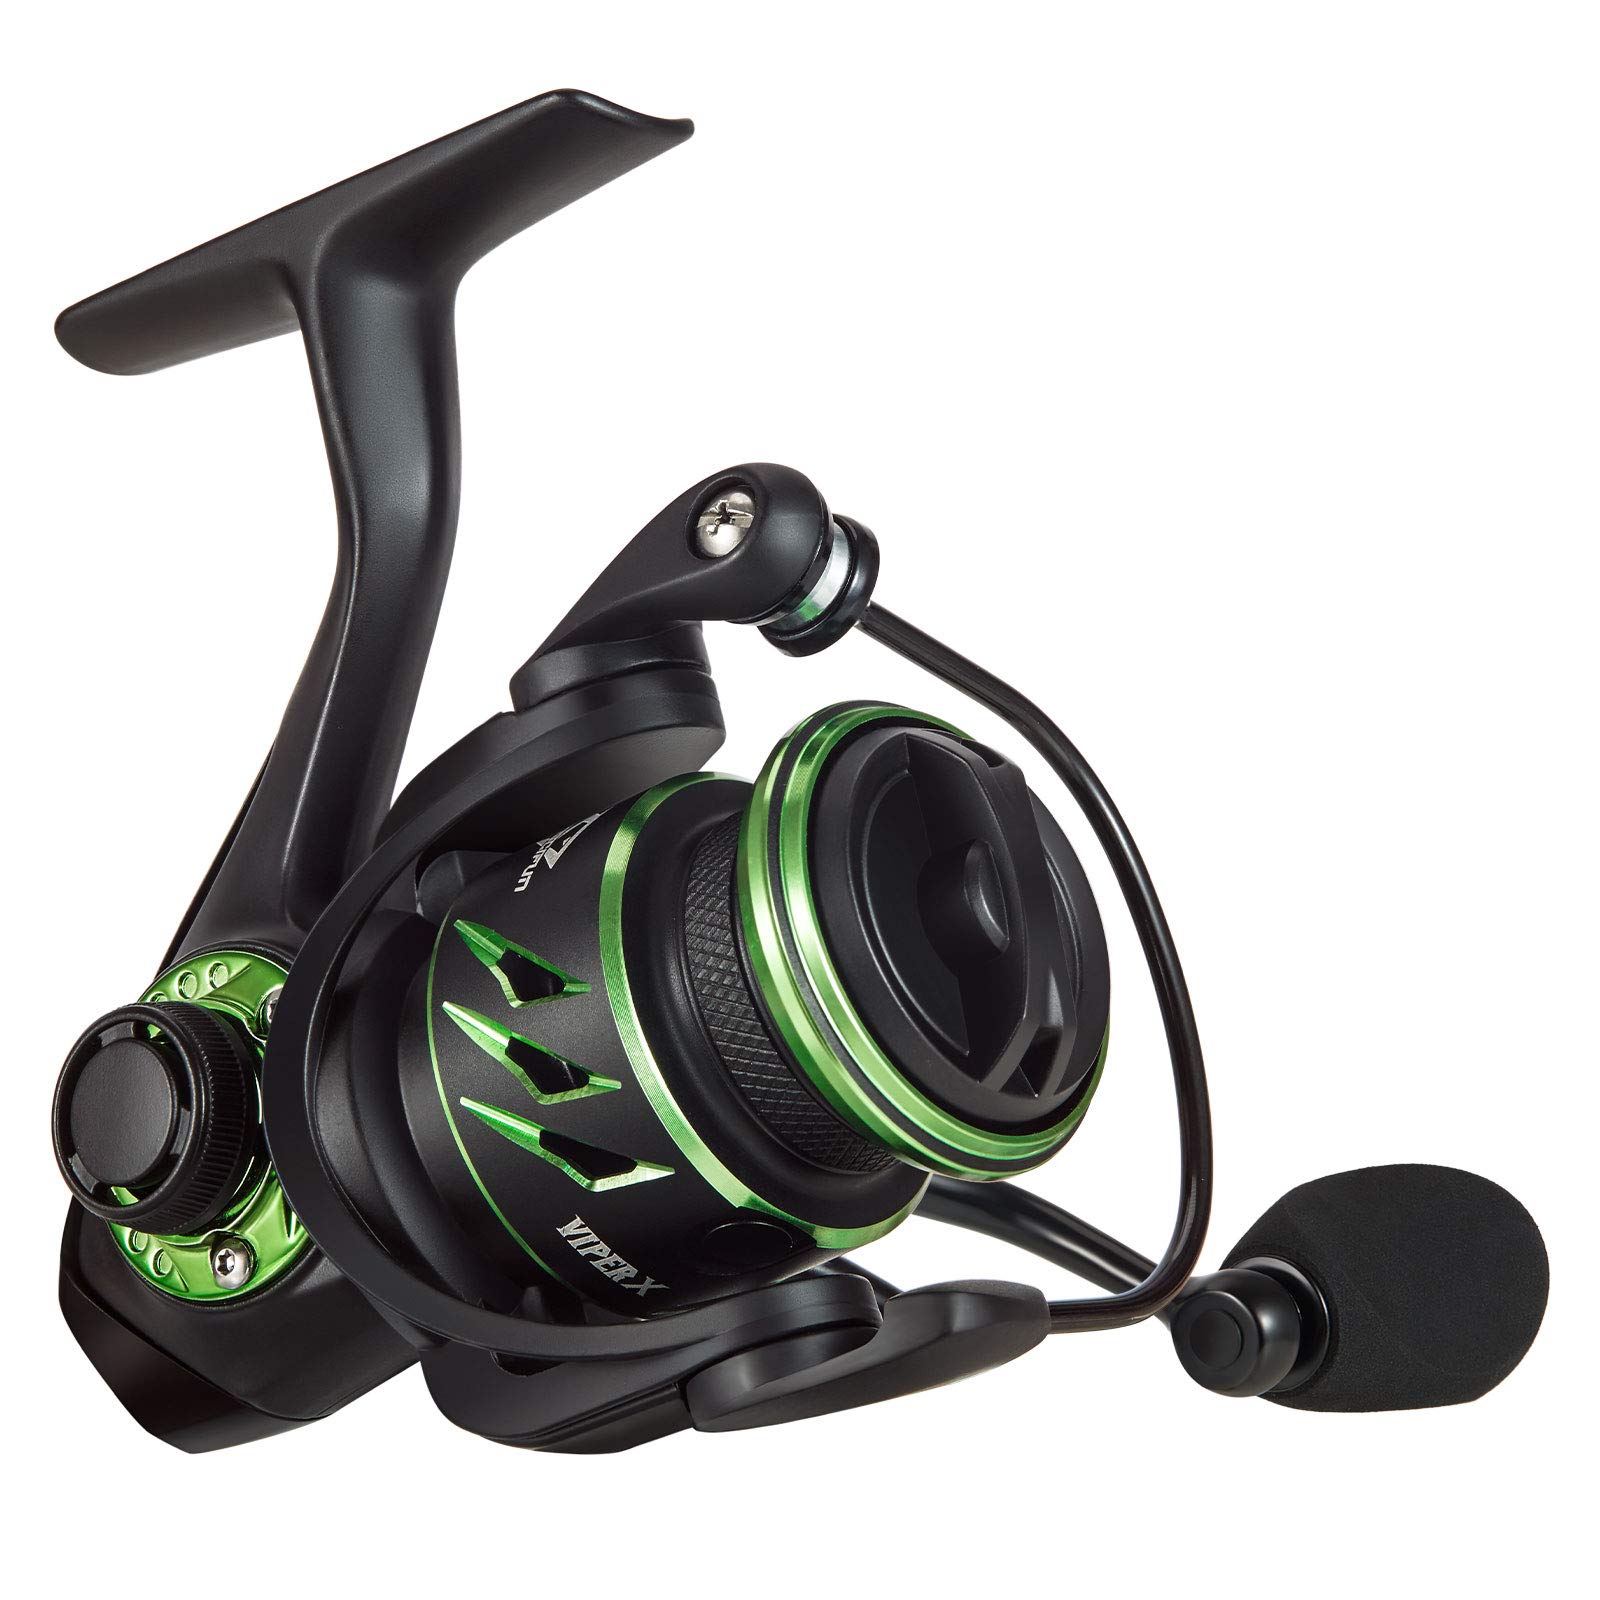 Piscifun Viper X Spinning Reel - Ultralight 5.2:1/6.2:1 High Speed Fishing  Spinning Reel, 10